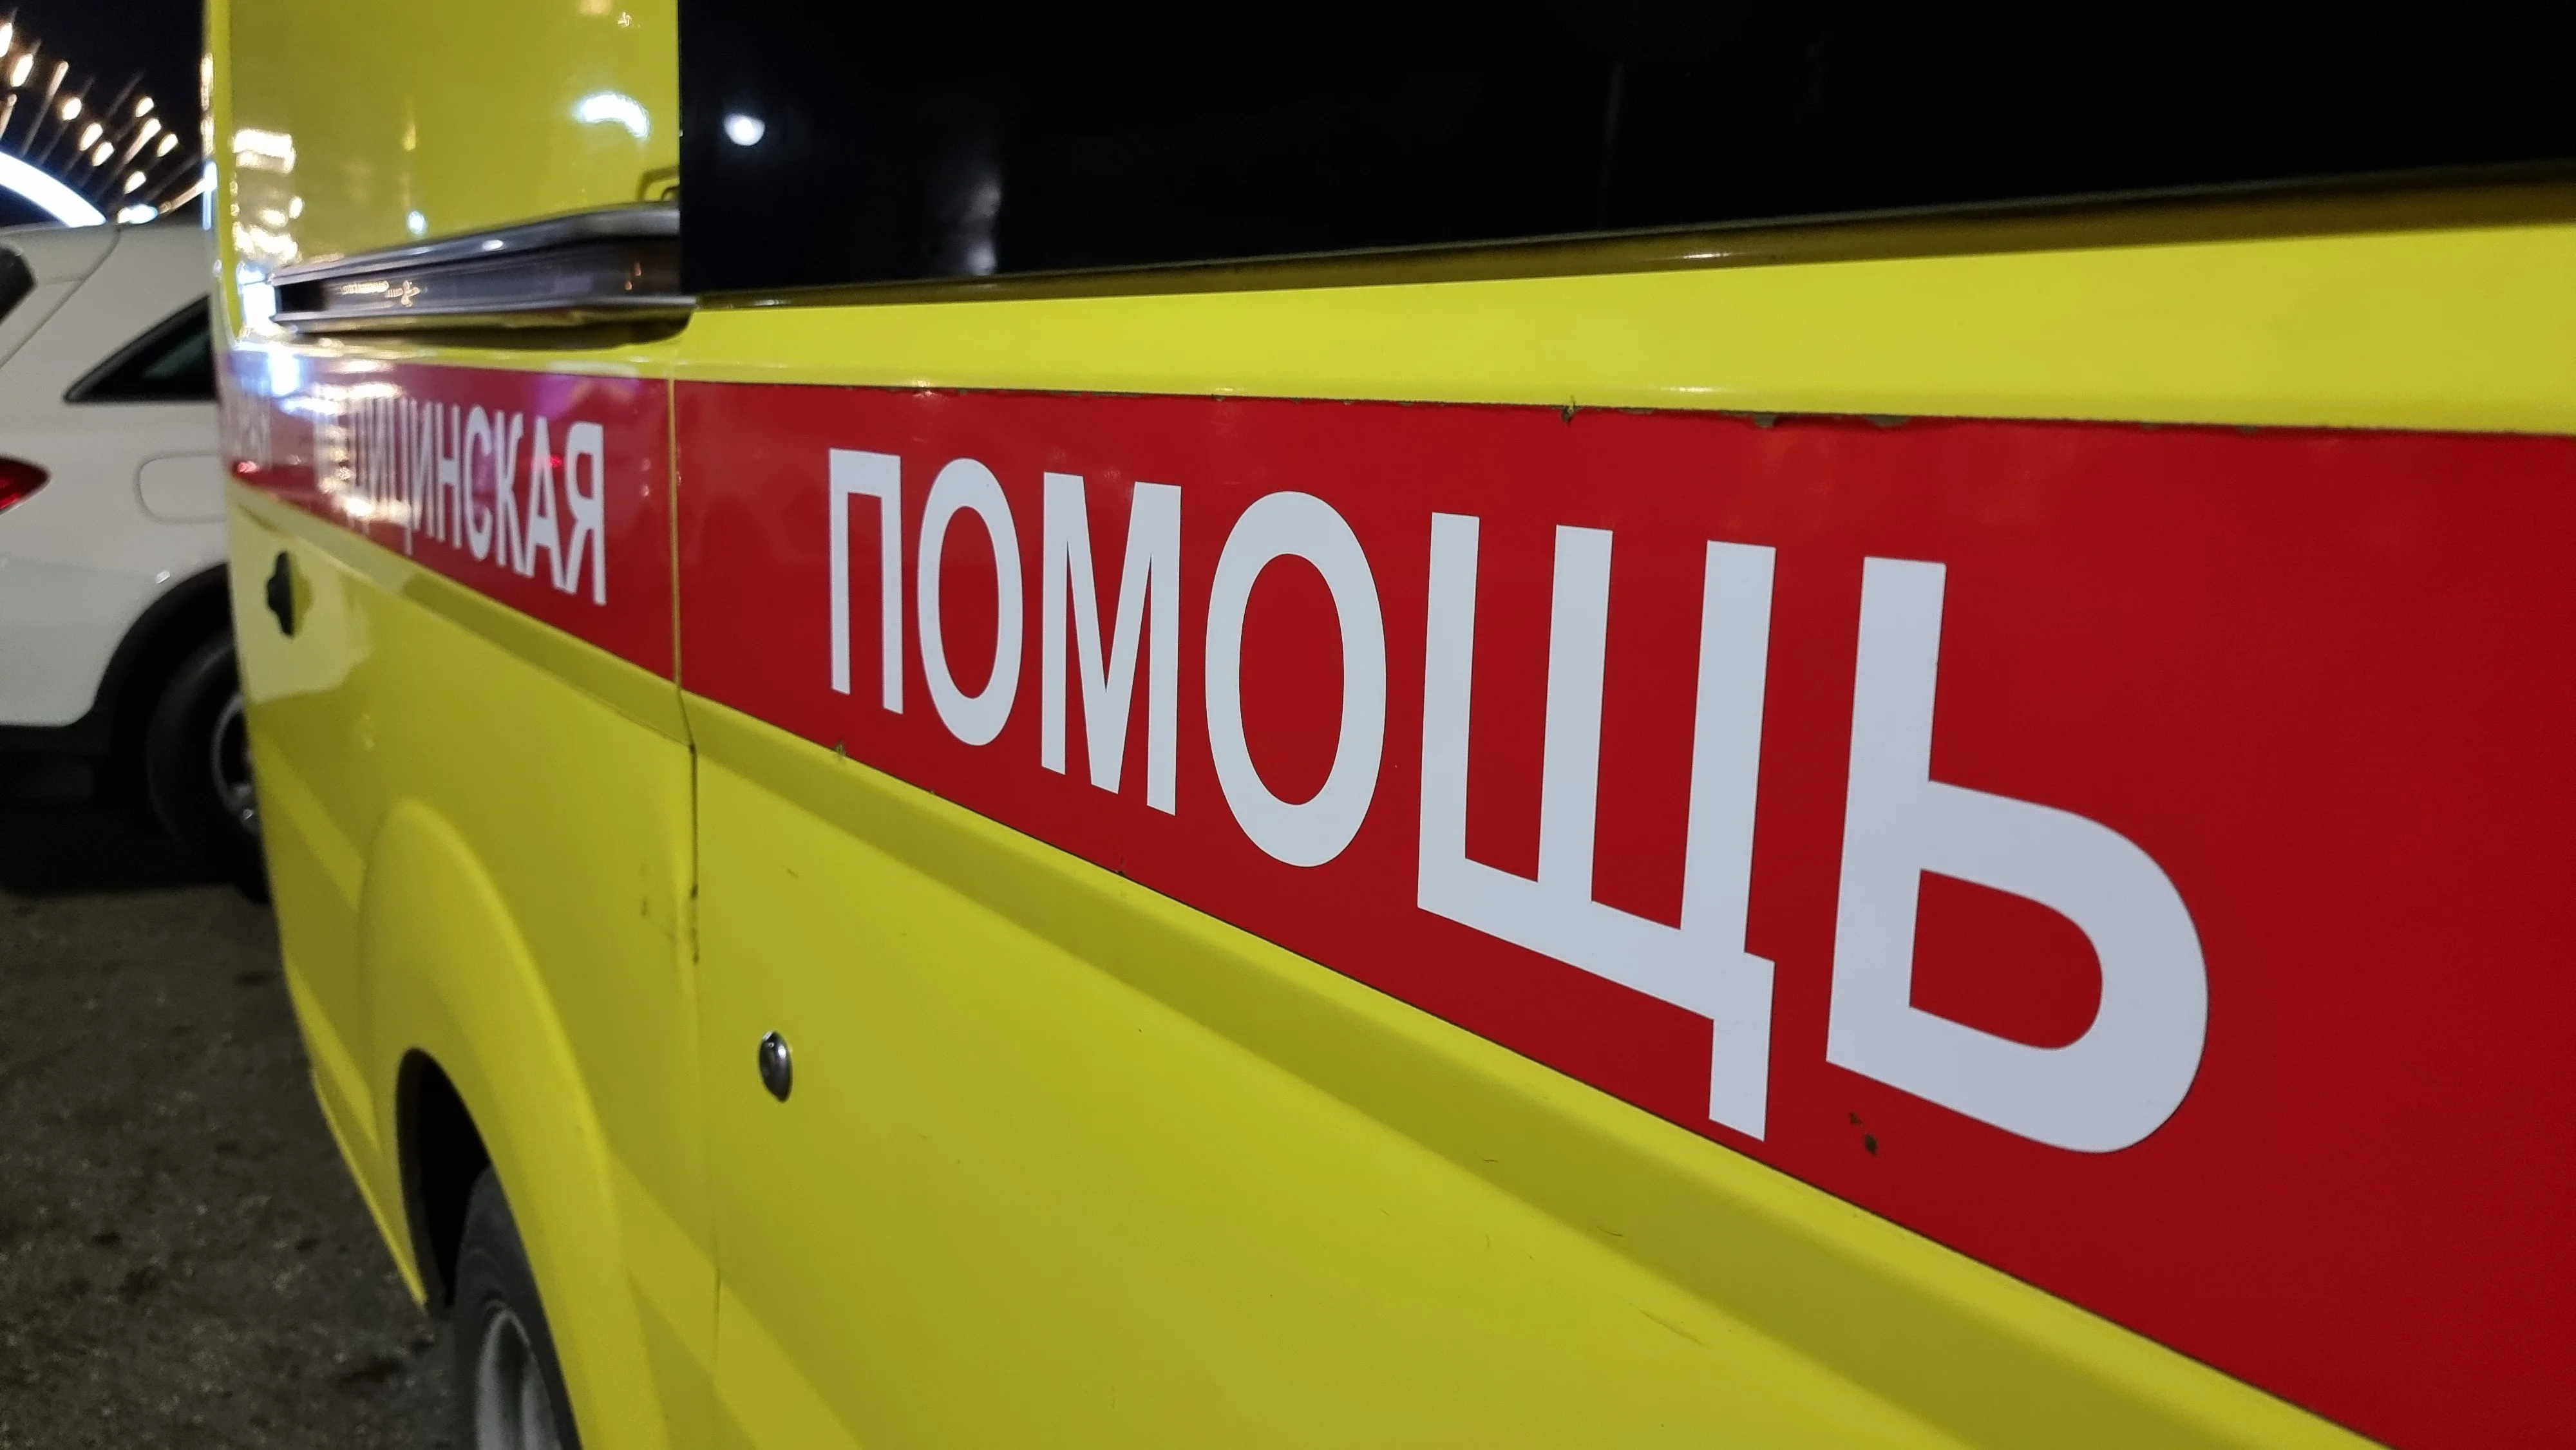 Трос своему коллеге обрезал монтажник-высотник в Ростове, мужчина в крайне тяжелом состоянии